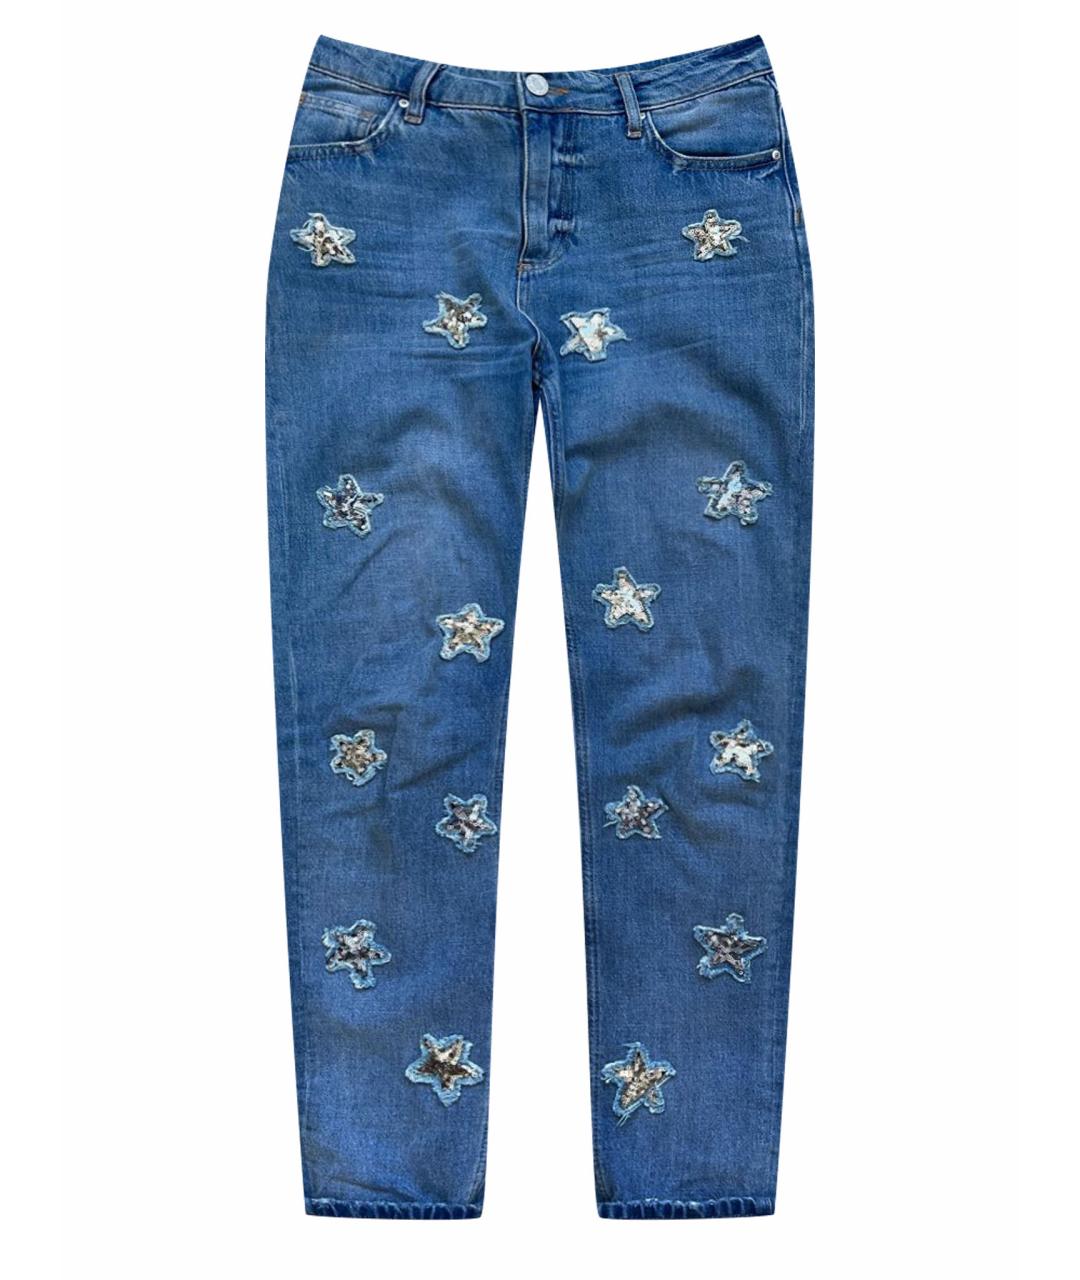 ZOE KARSSEN Голубые хлопковые джинсы слим, фото 1